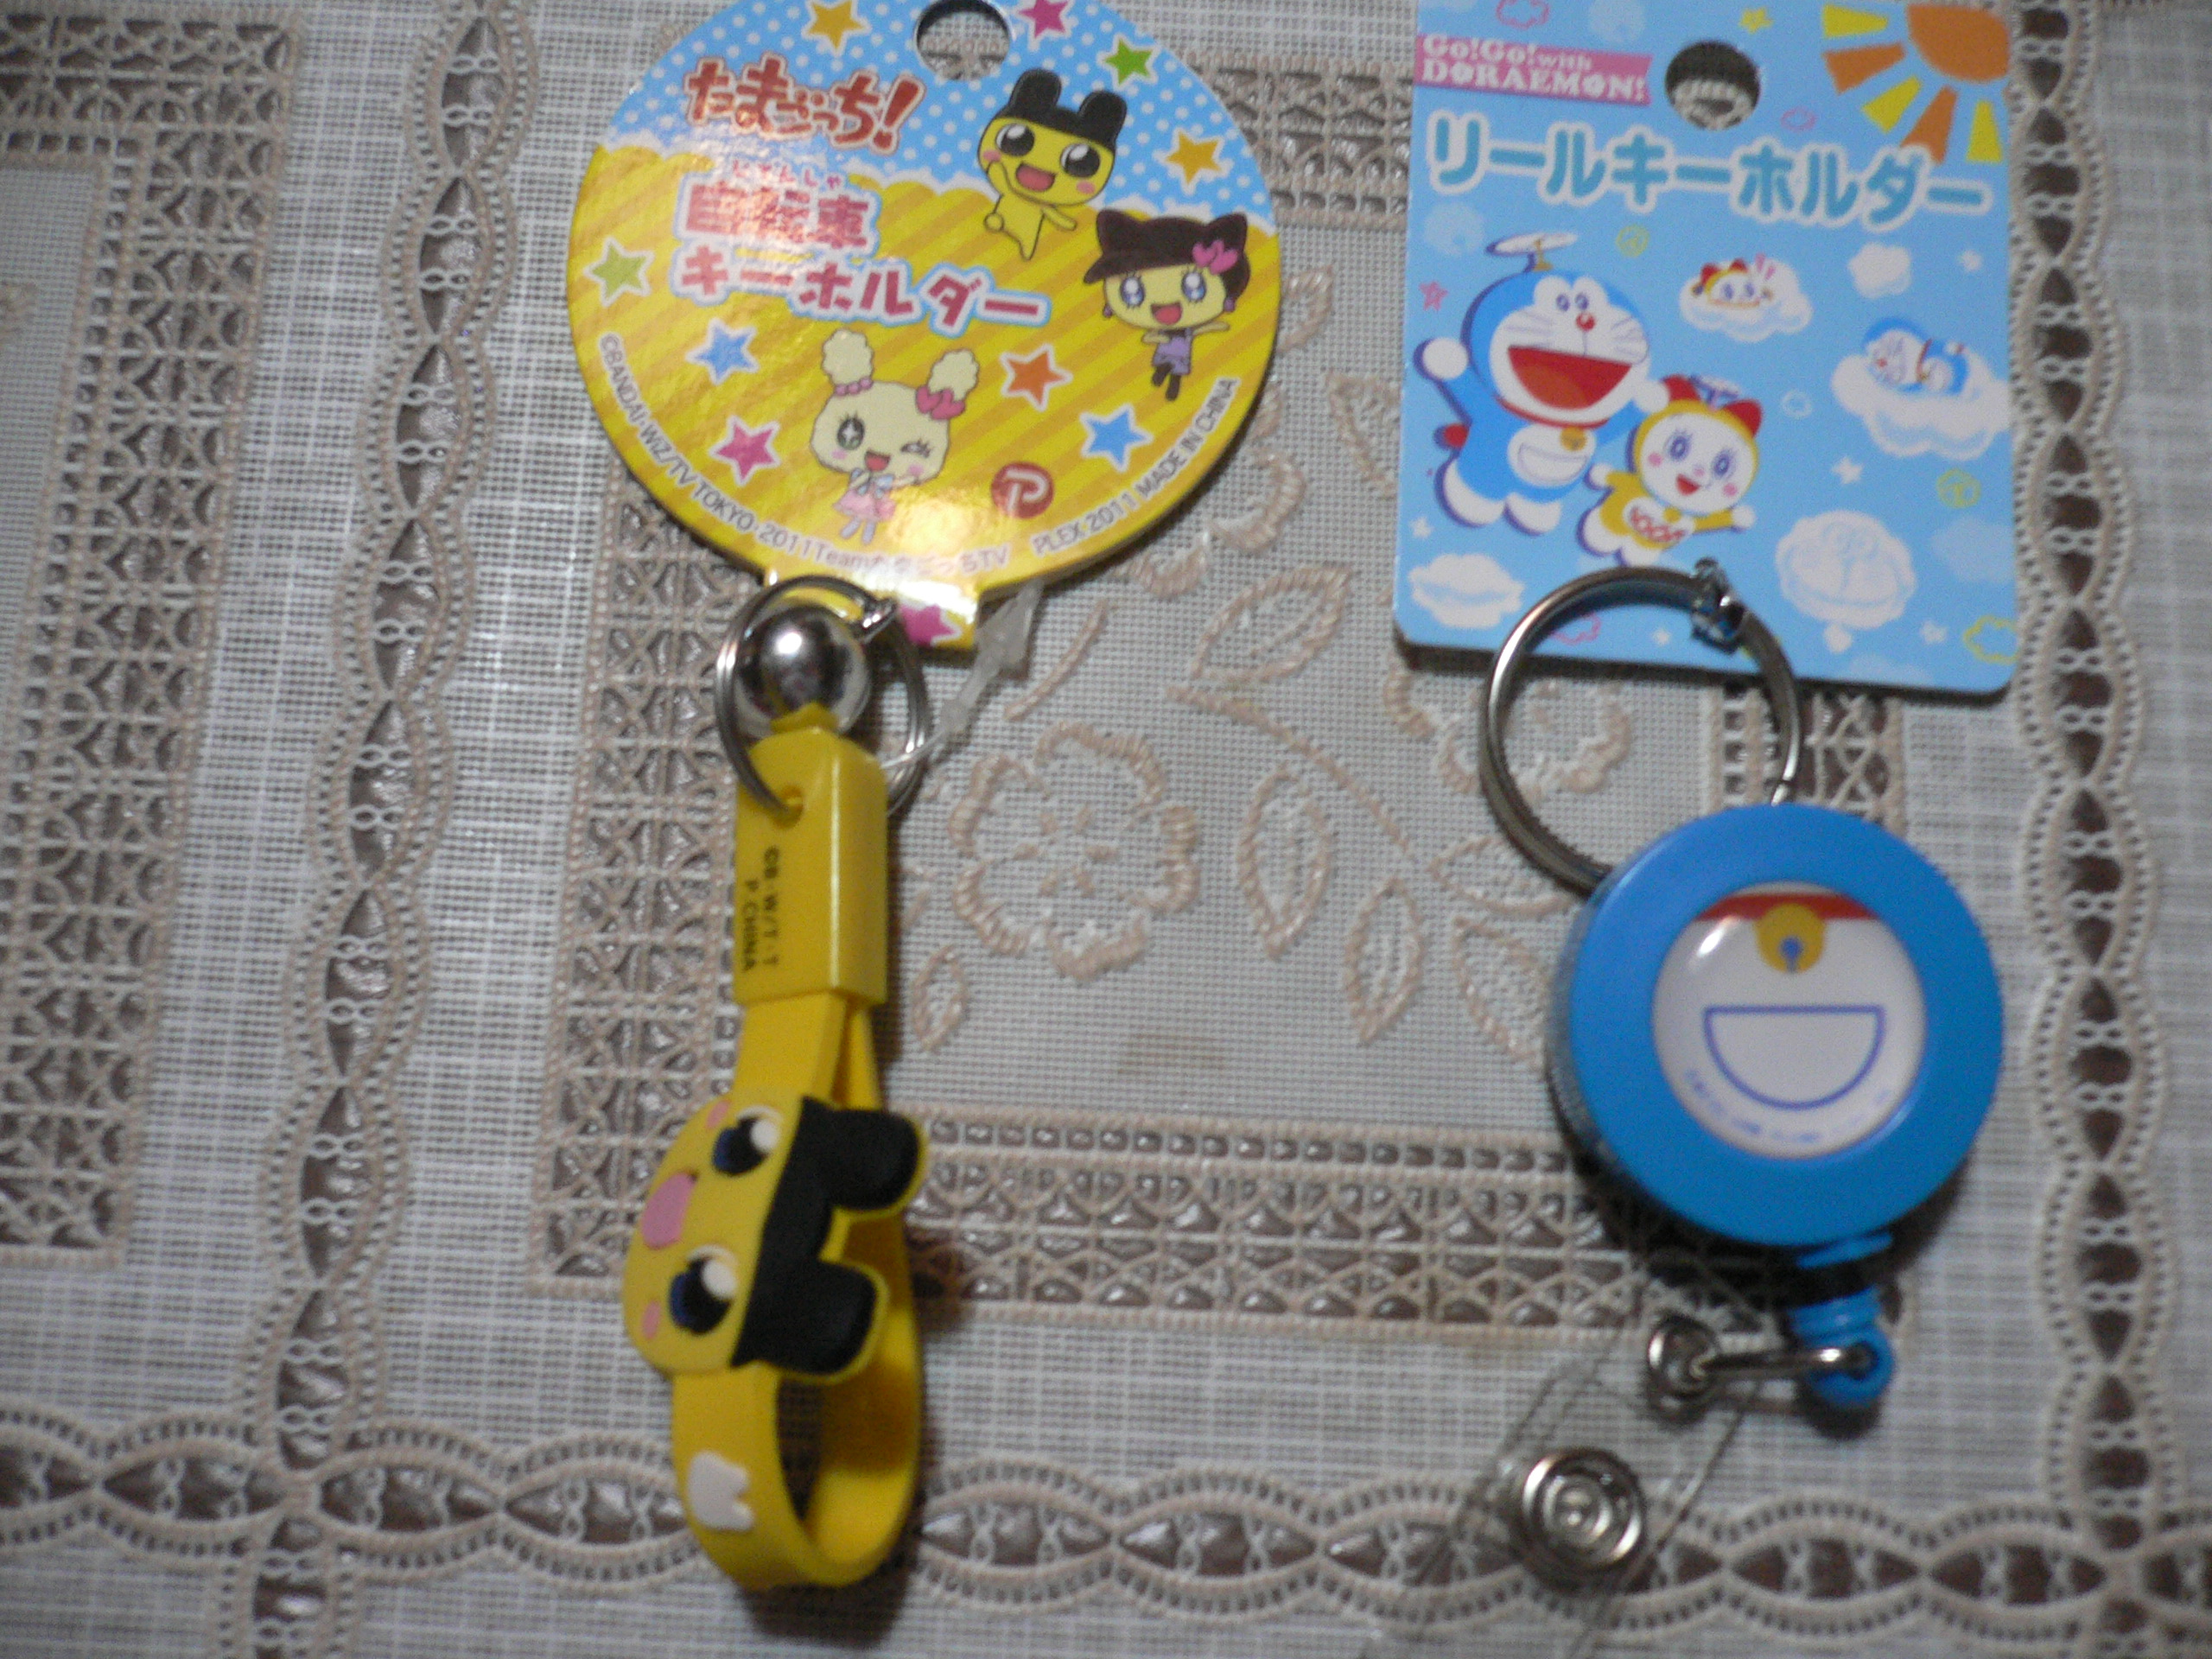 たまごっち 自転車キーホルダー Doraemon リールキーホルダー 100均オタクの百円均一ブログ